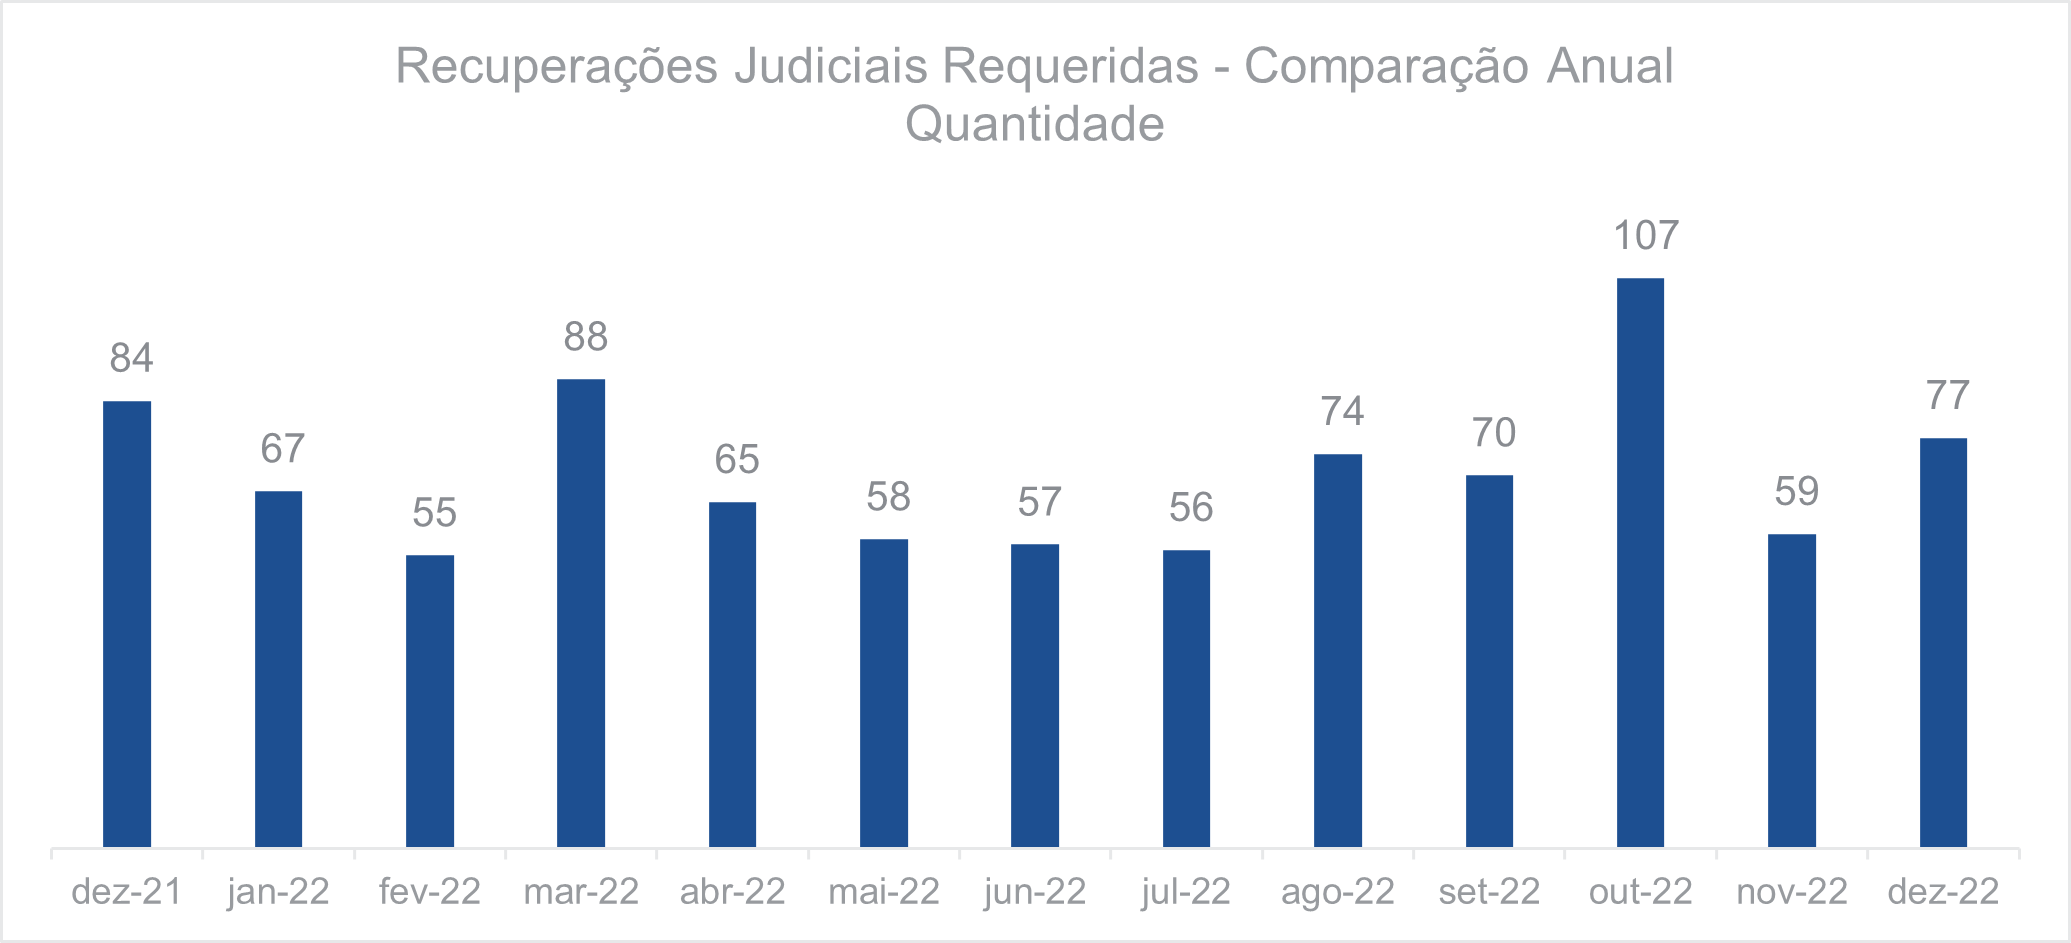 Recuperações judiciais requeridas - Comparação anual quantidade